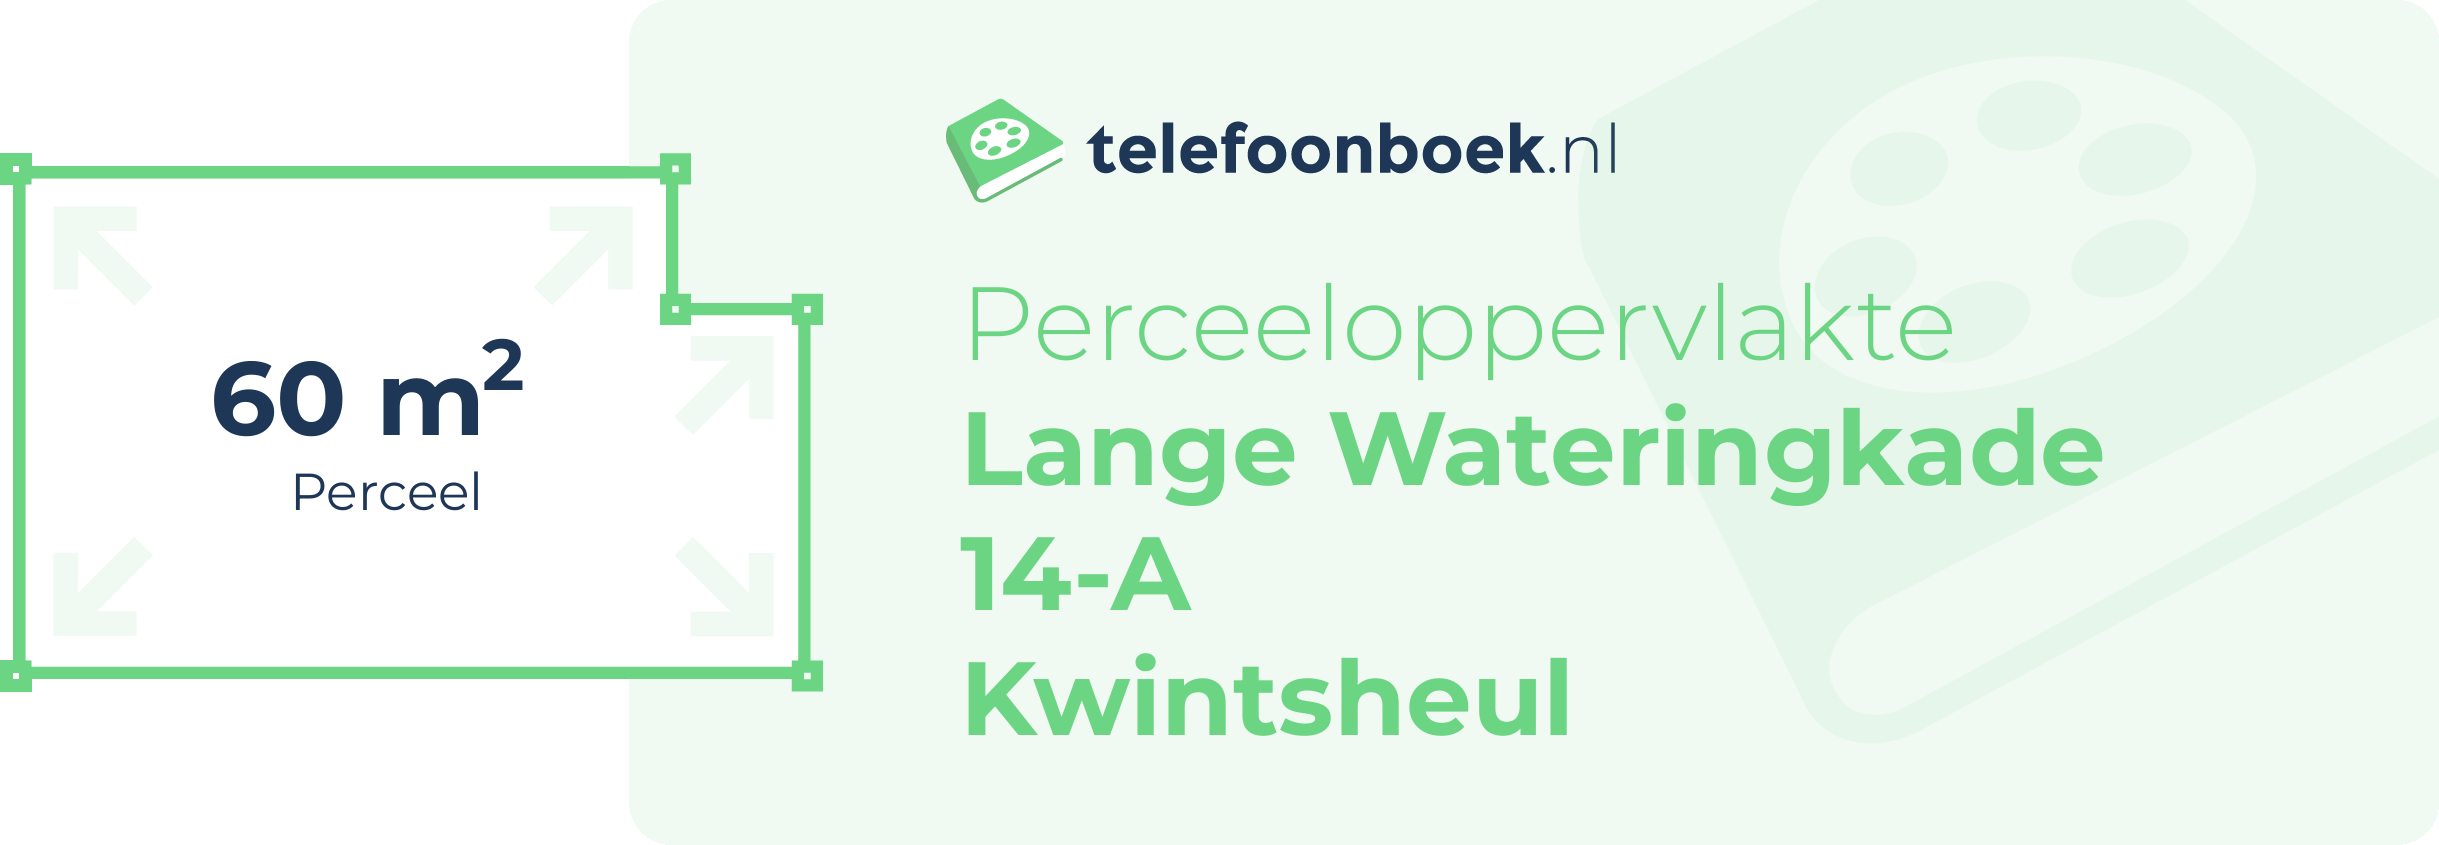 Perceeloppervlakte Lange Wateringkade 14-A Kwintsheul